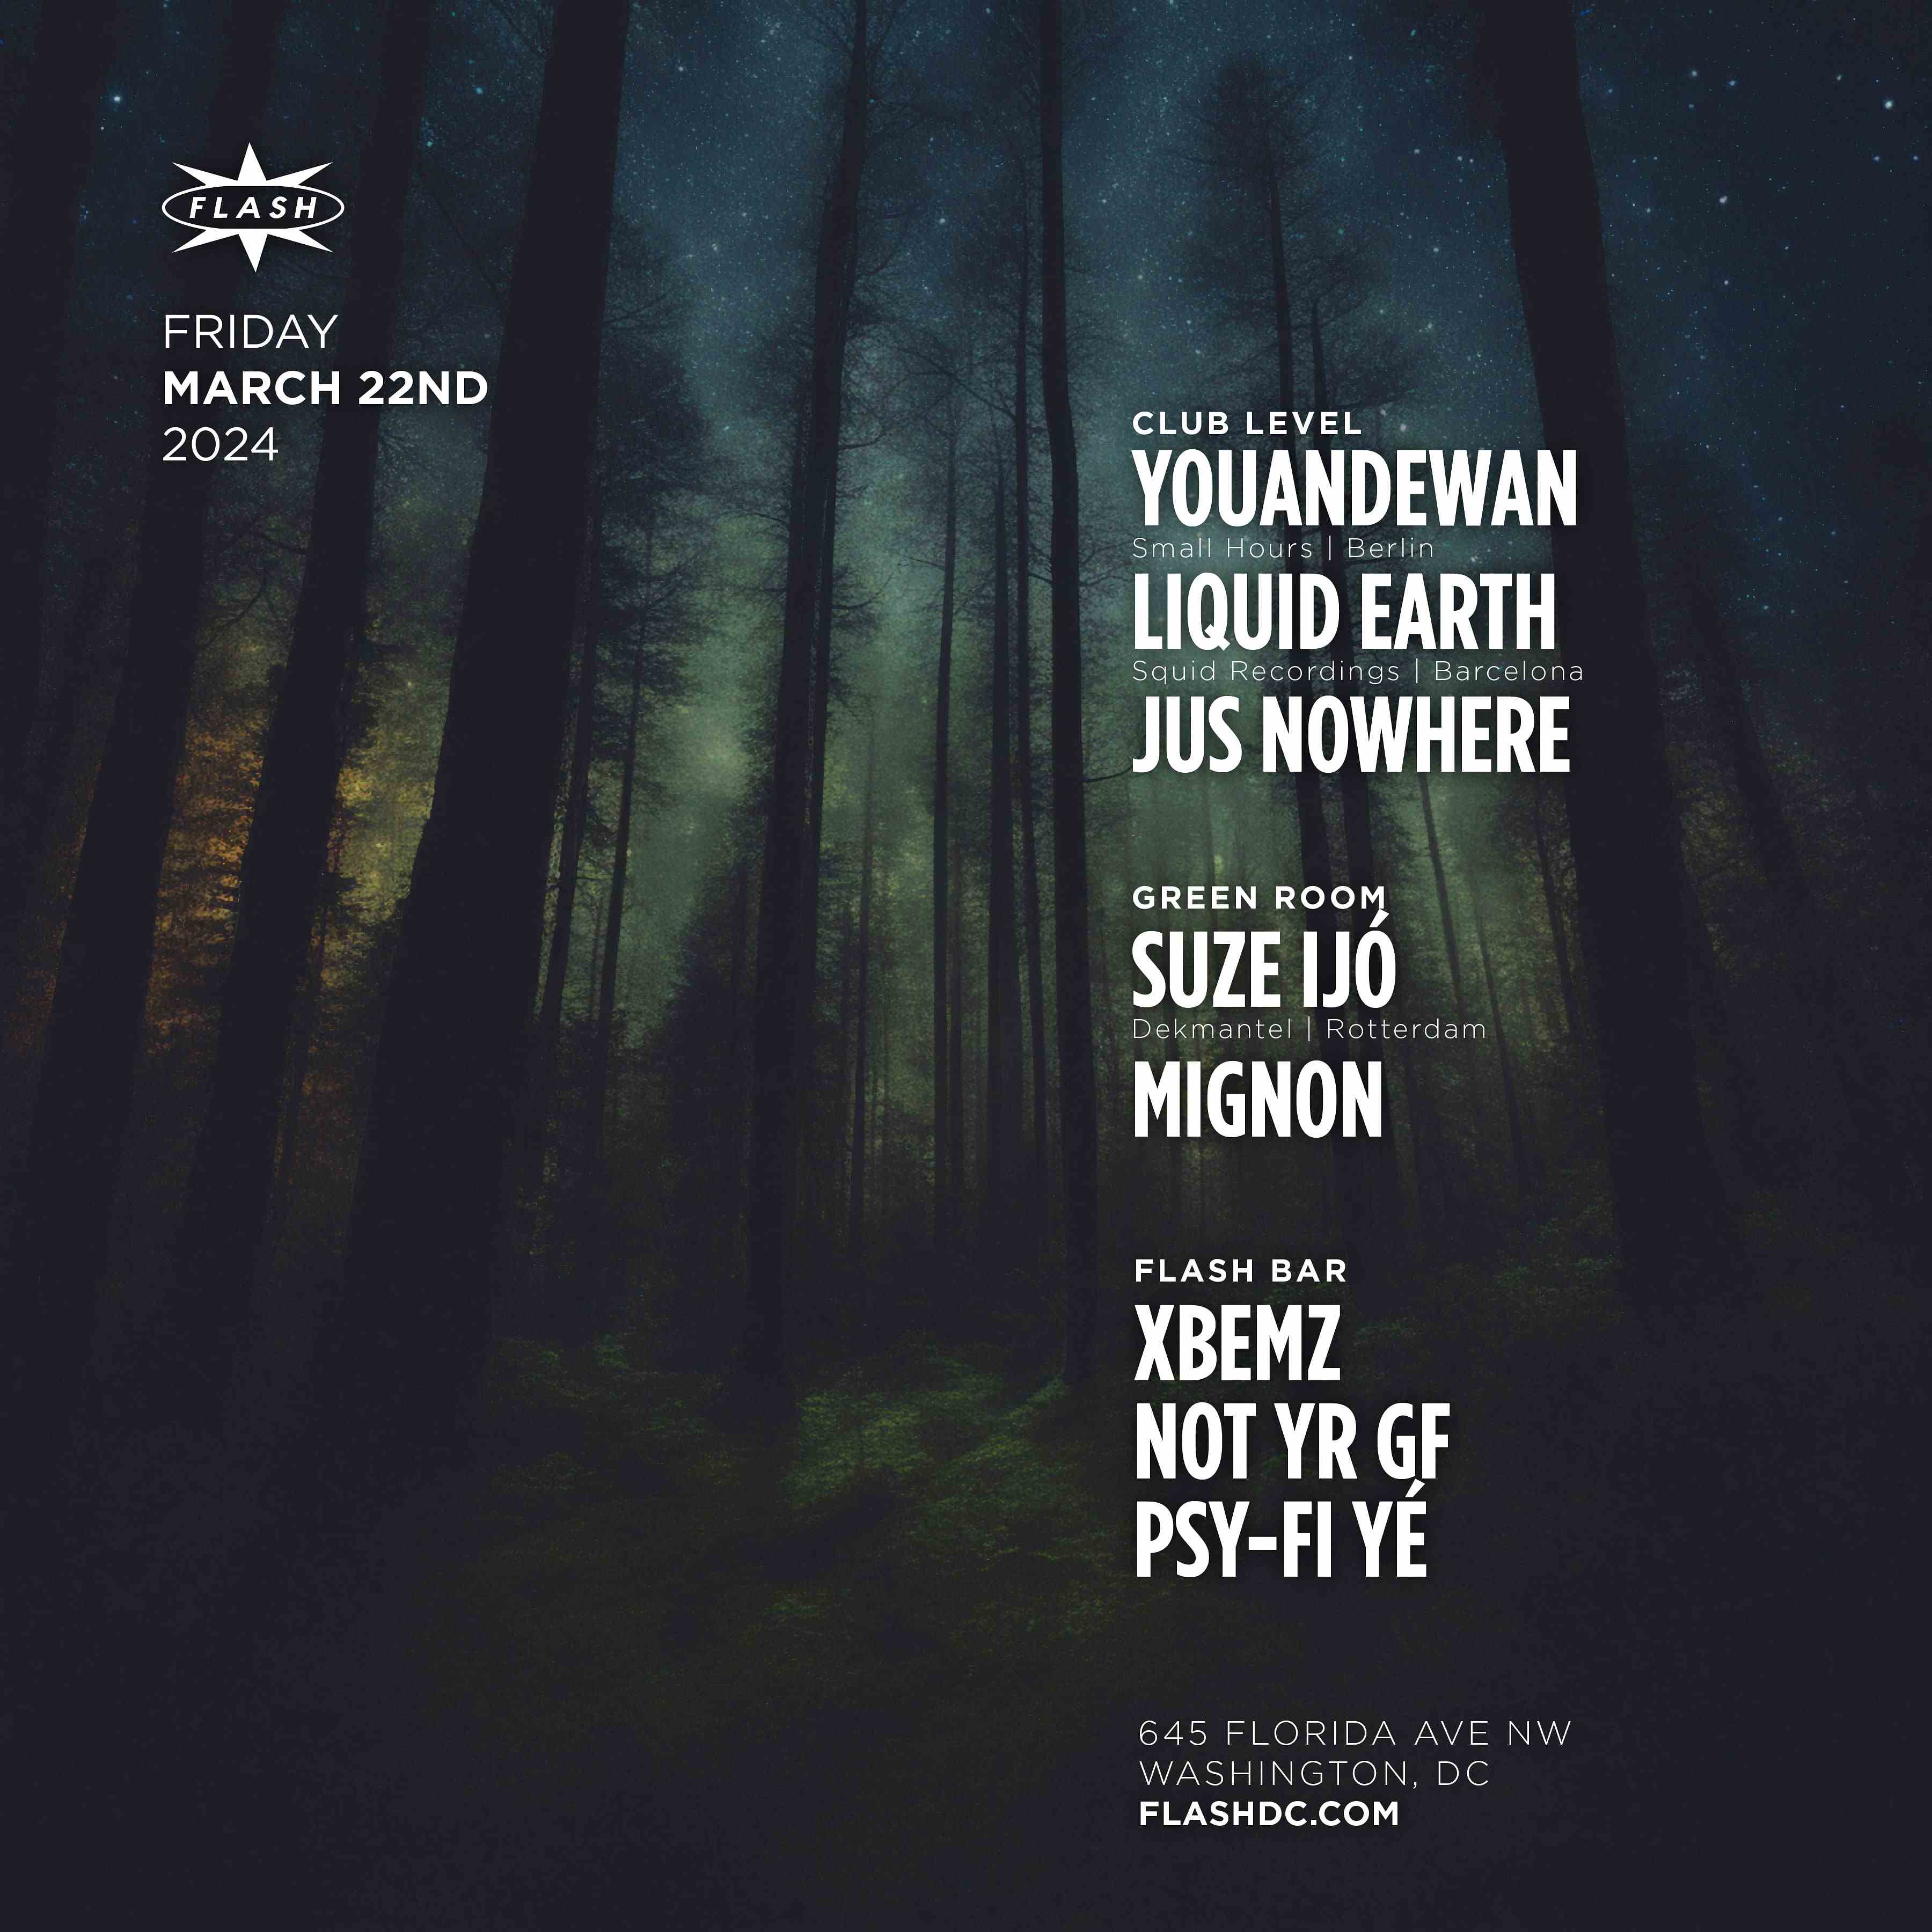 Youandewan - Liquid Earth event flyer